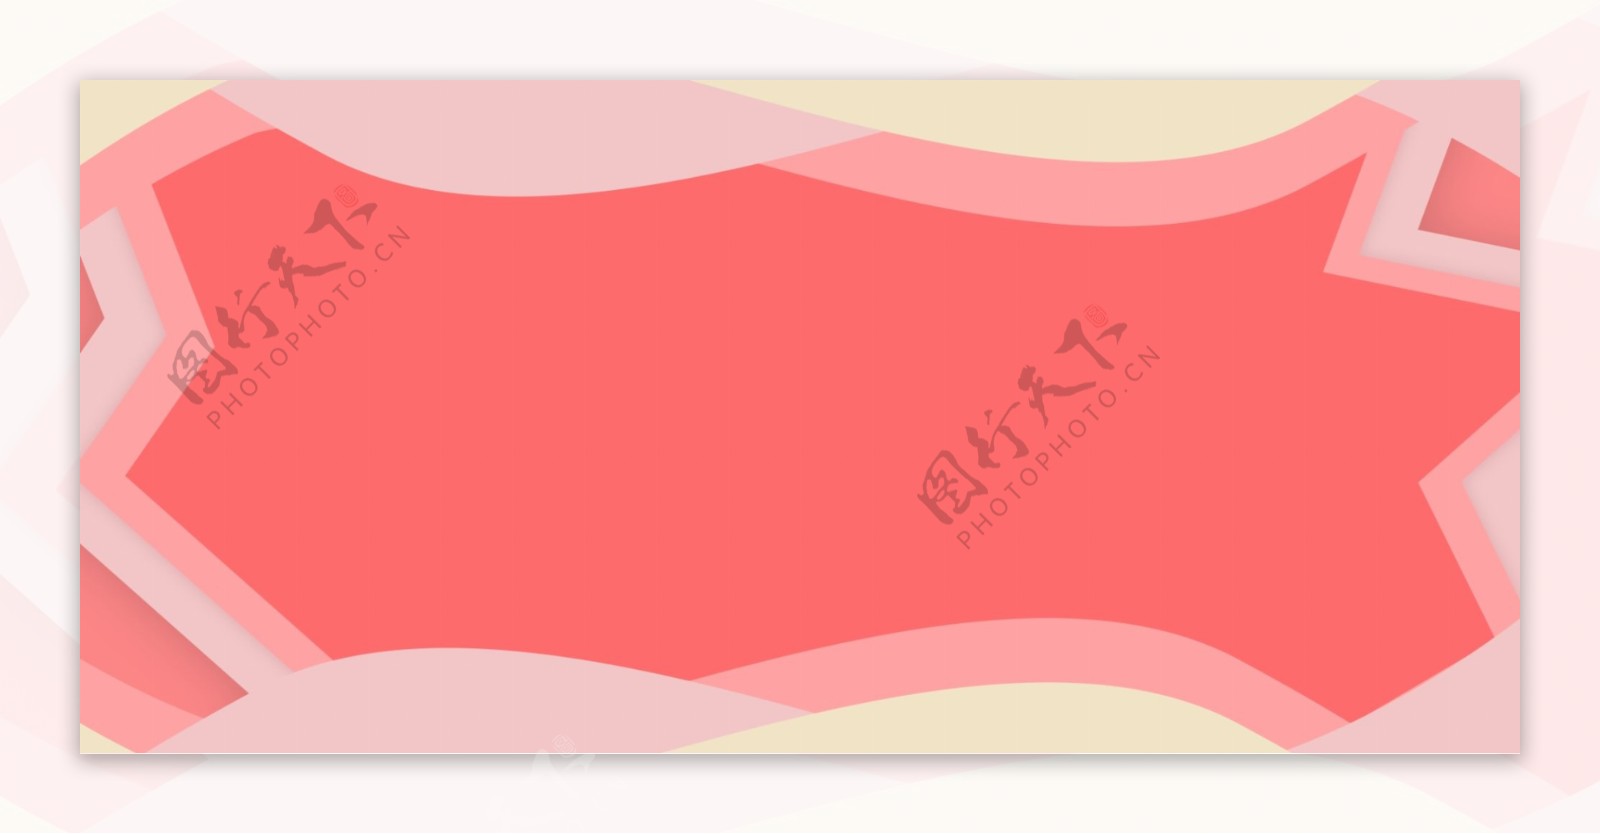 红粉色创意边框banner背景设计